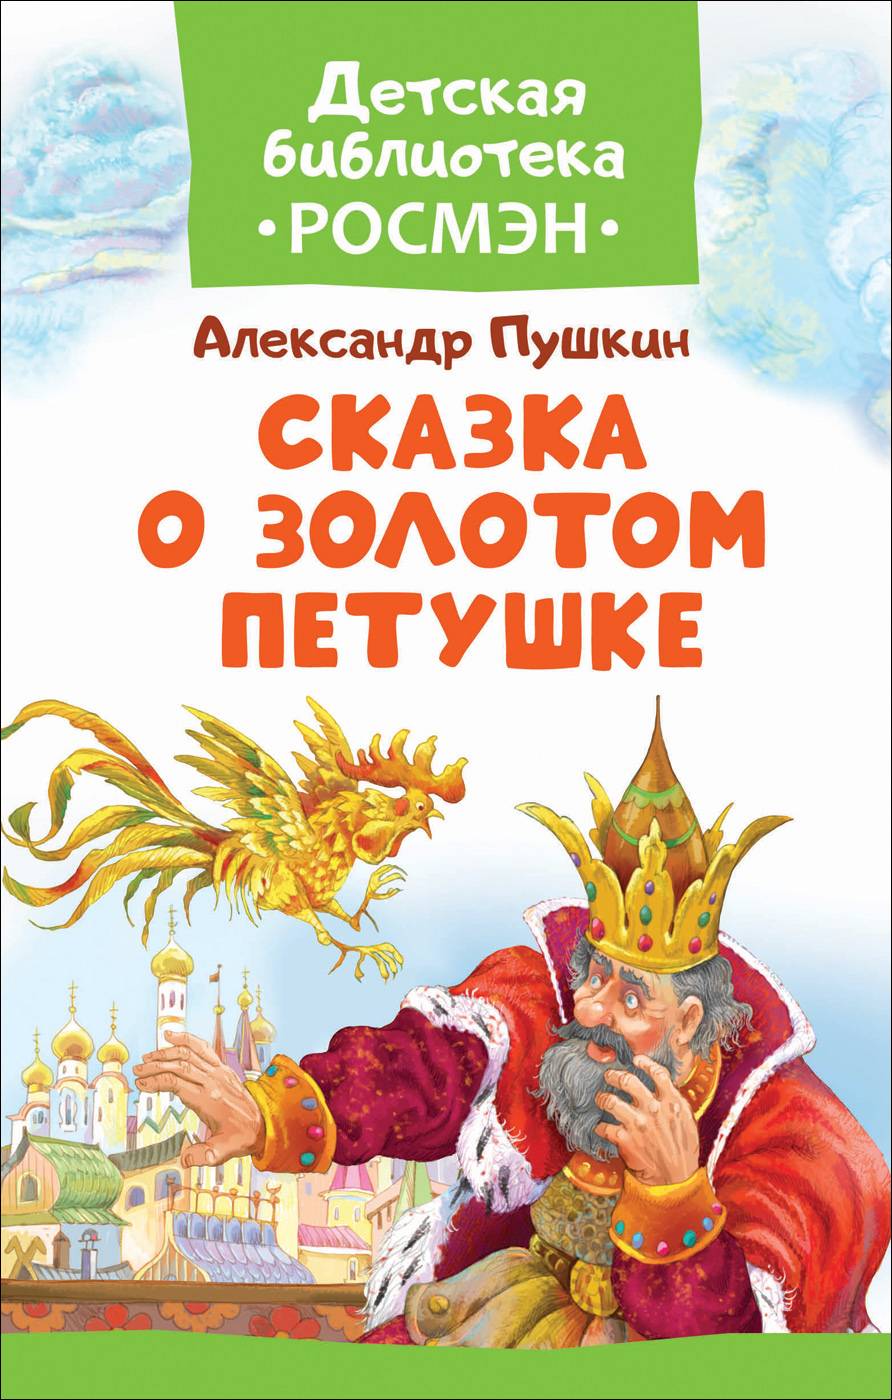 Сказка о золотом петушке А.С.Пушкин Детская библиотека "Росмэн"